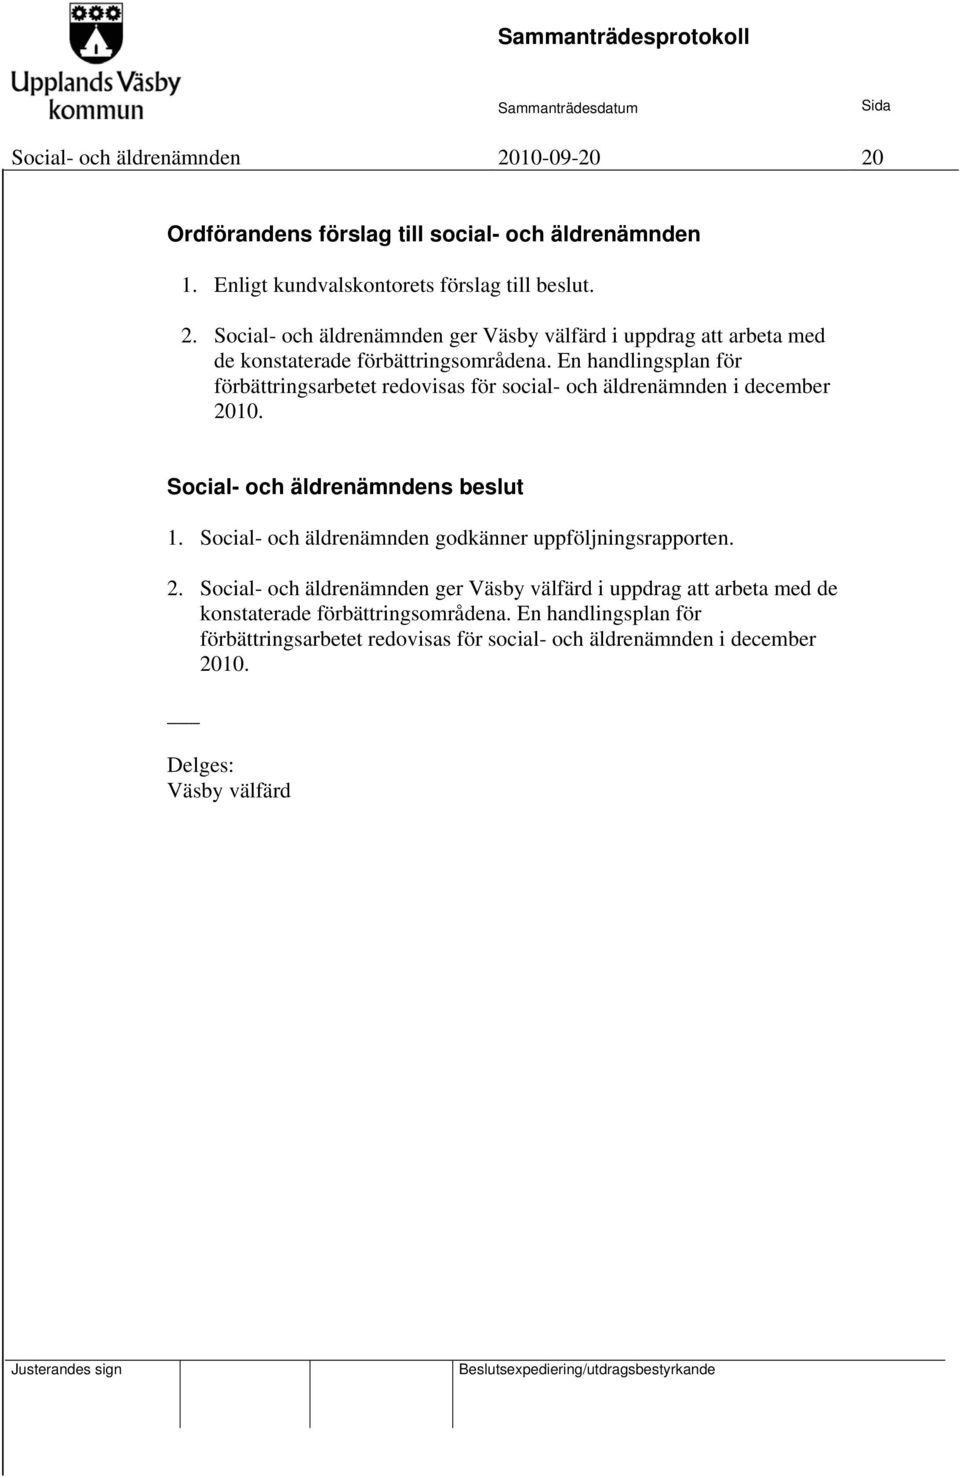 Social- och äldrenämnden godkänner uppföljningsrapporten. 2. Social- och äldrenämnden ger Väsby välfärd i uppdrag att arbeta med de konstaterade förbättringsområdena.